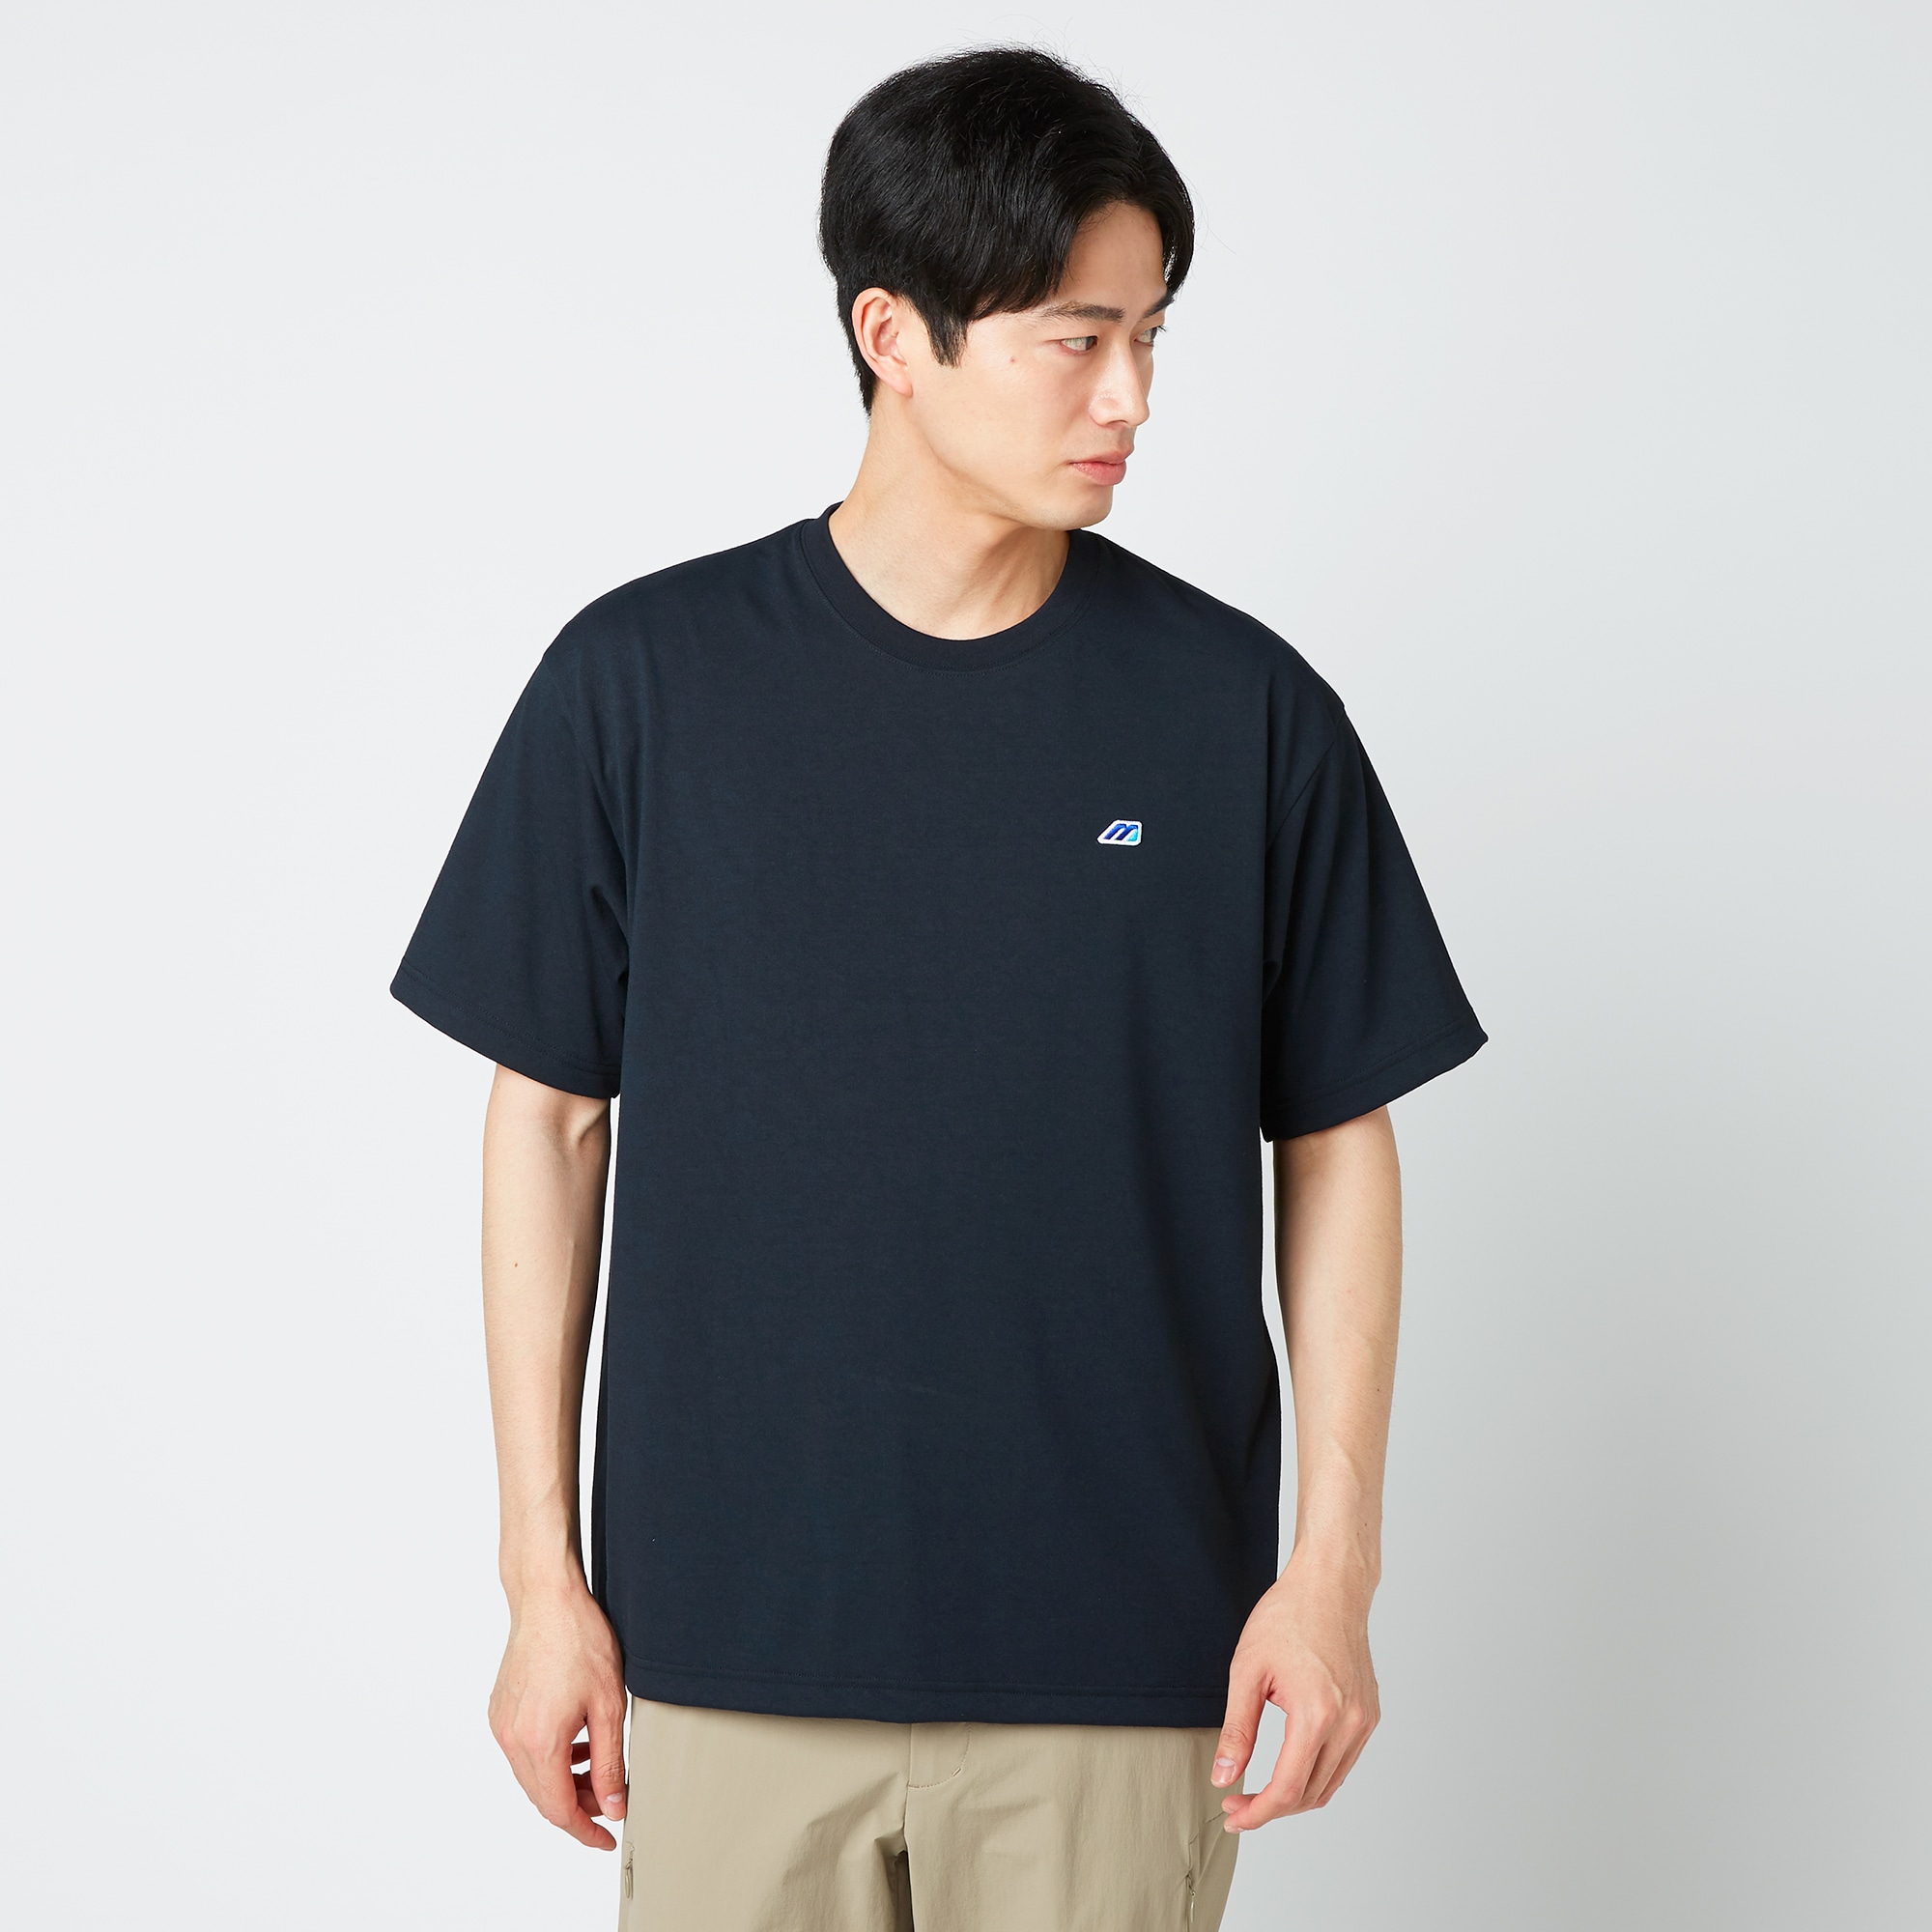 モノグラムM Tシャツ[ユニセックス]|B2JAA001|Go to by mizuno 